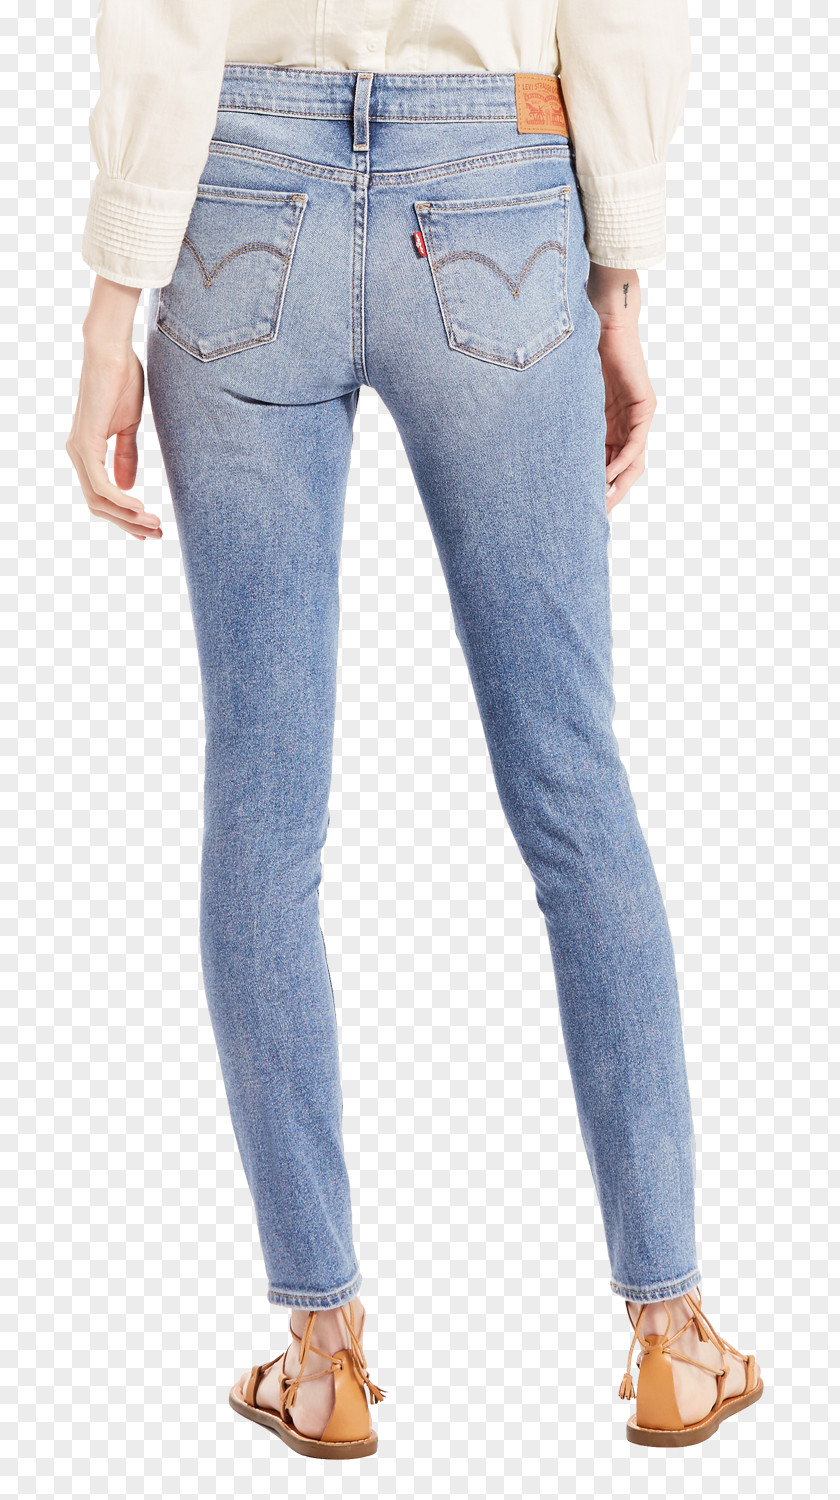 Levis Jeans Denim Levi Strauss & Co. Slim-fit Pants Fashion PNG